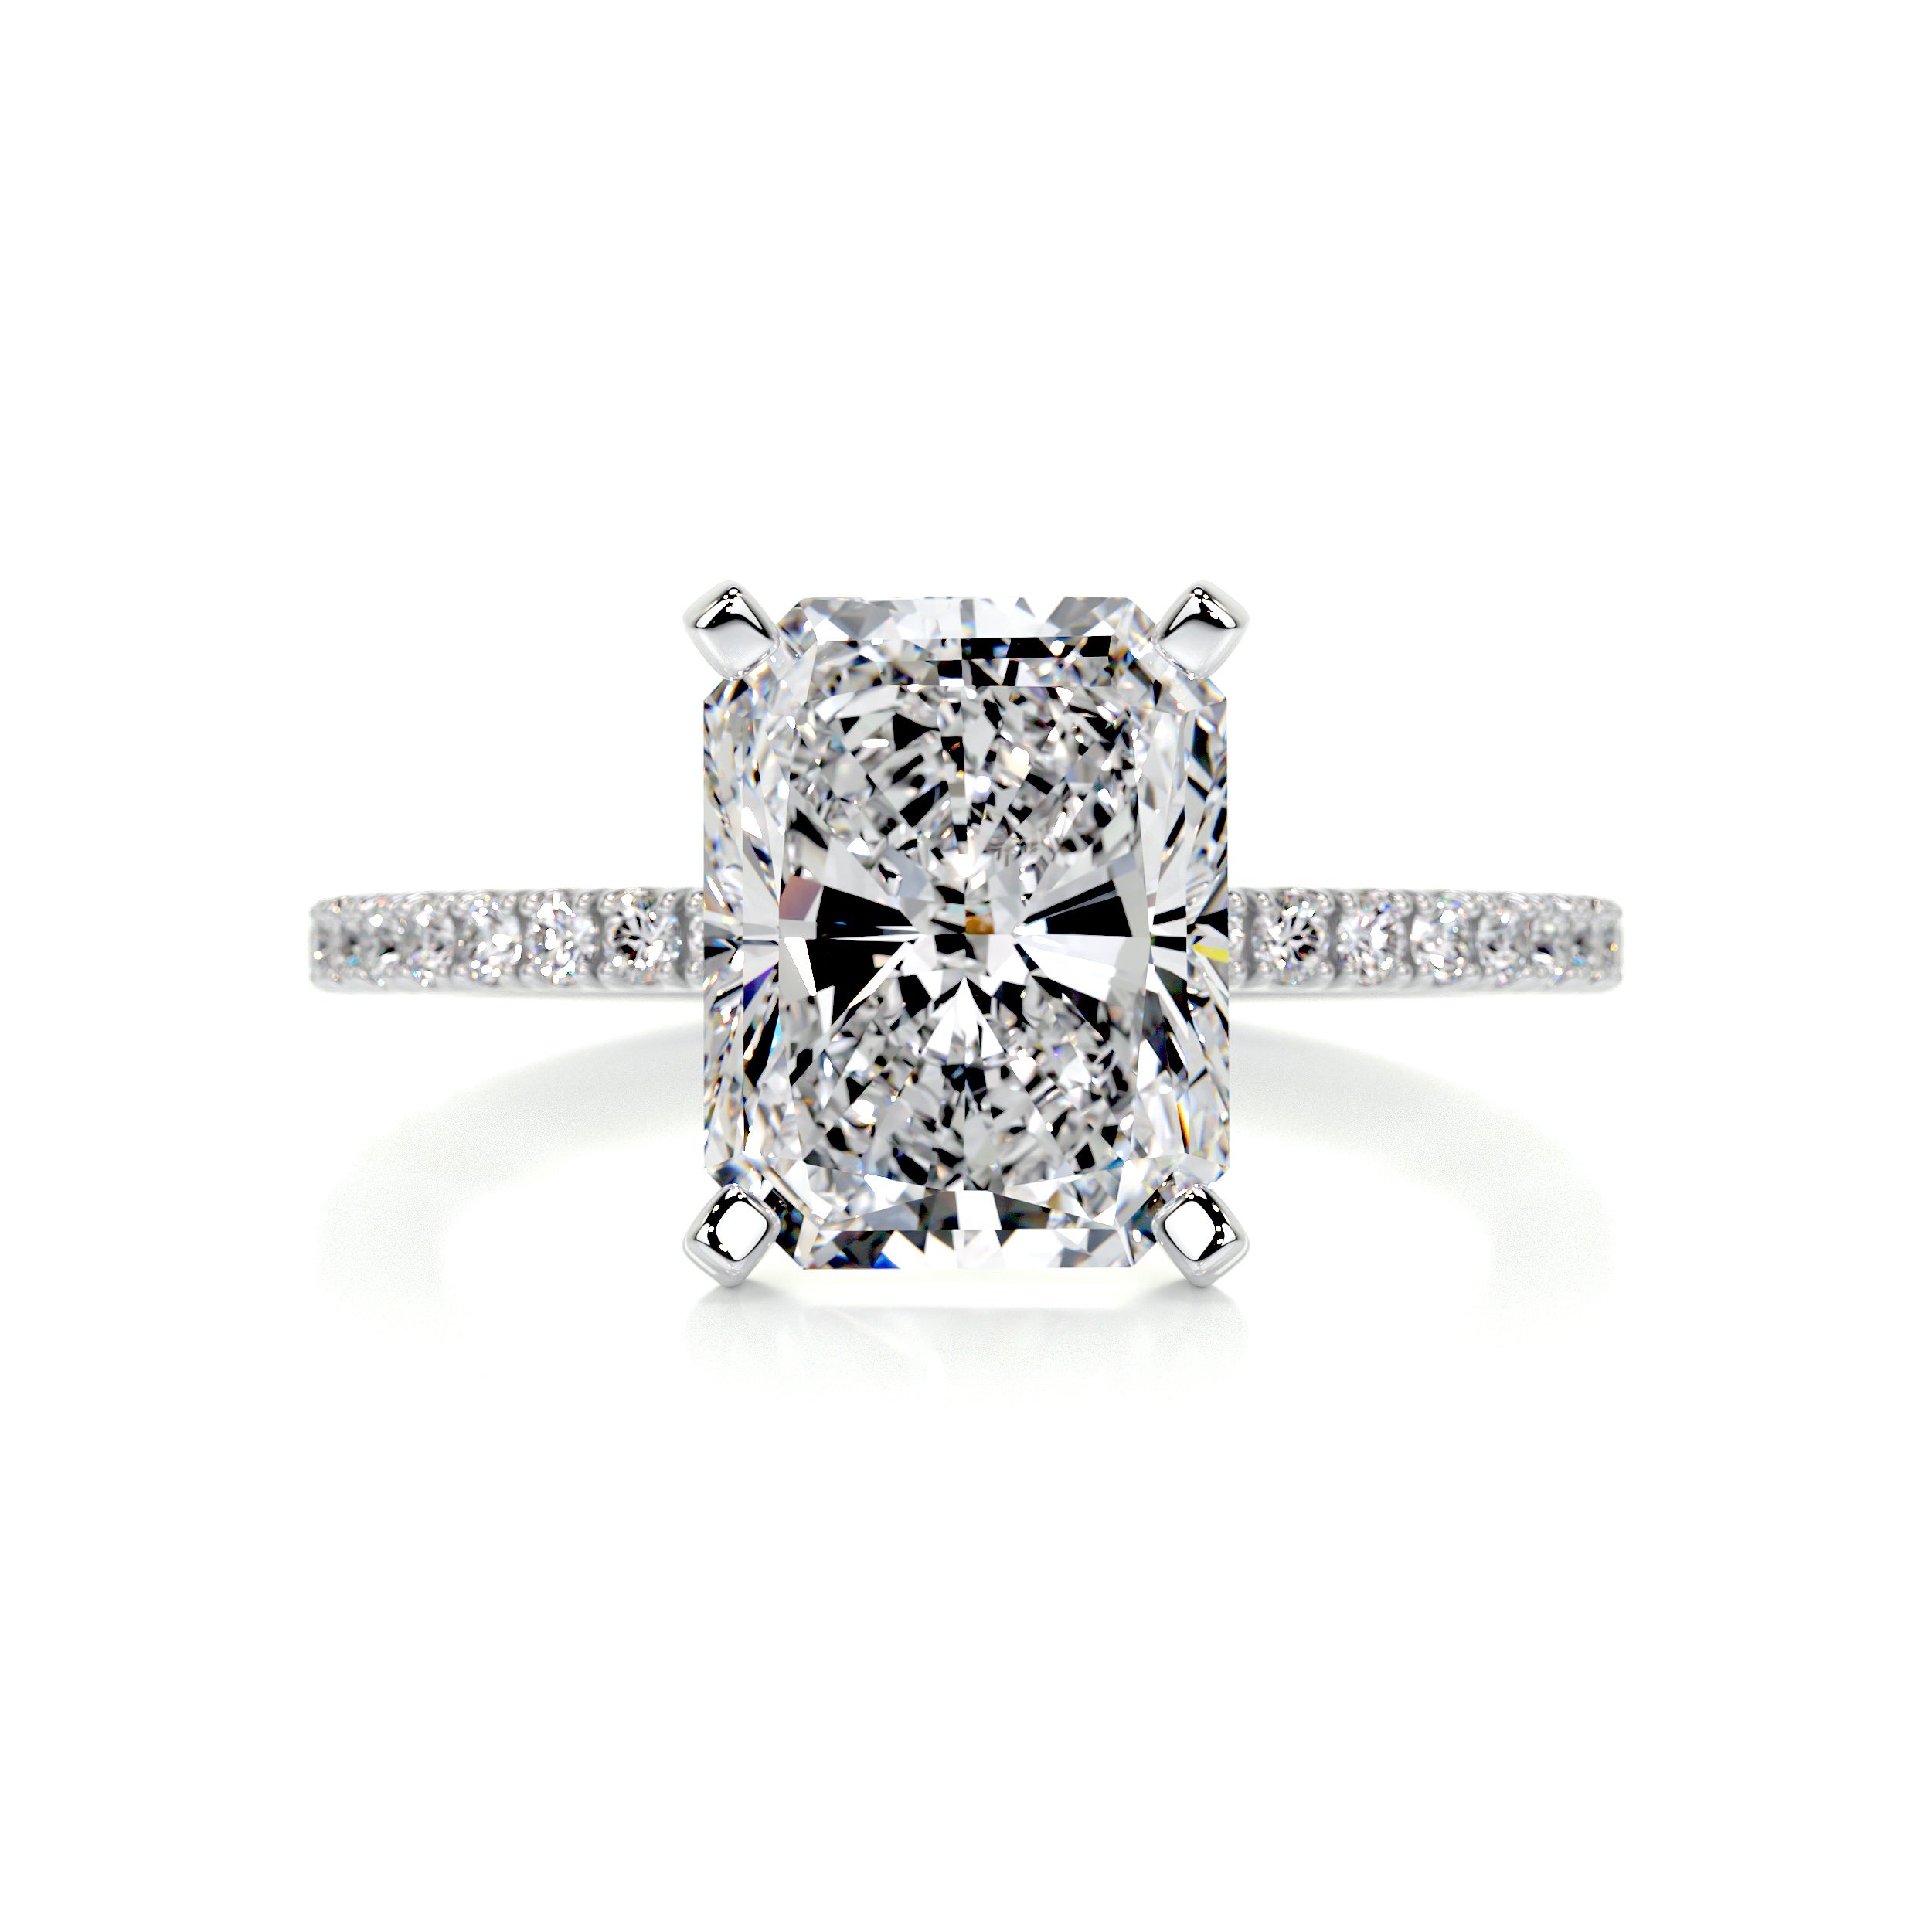 Audrey Diamond Engagement Ring   (3.5 Carat) -14K White Gold